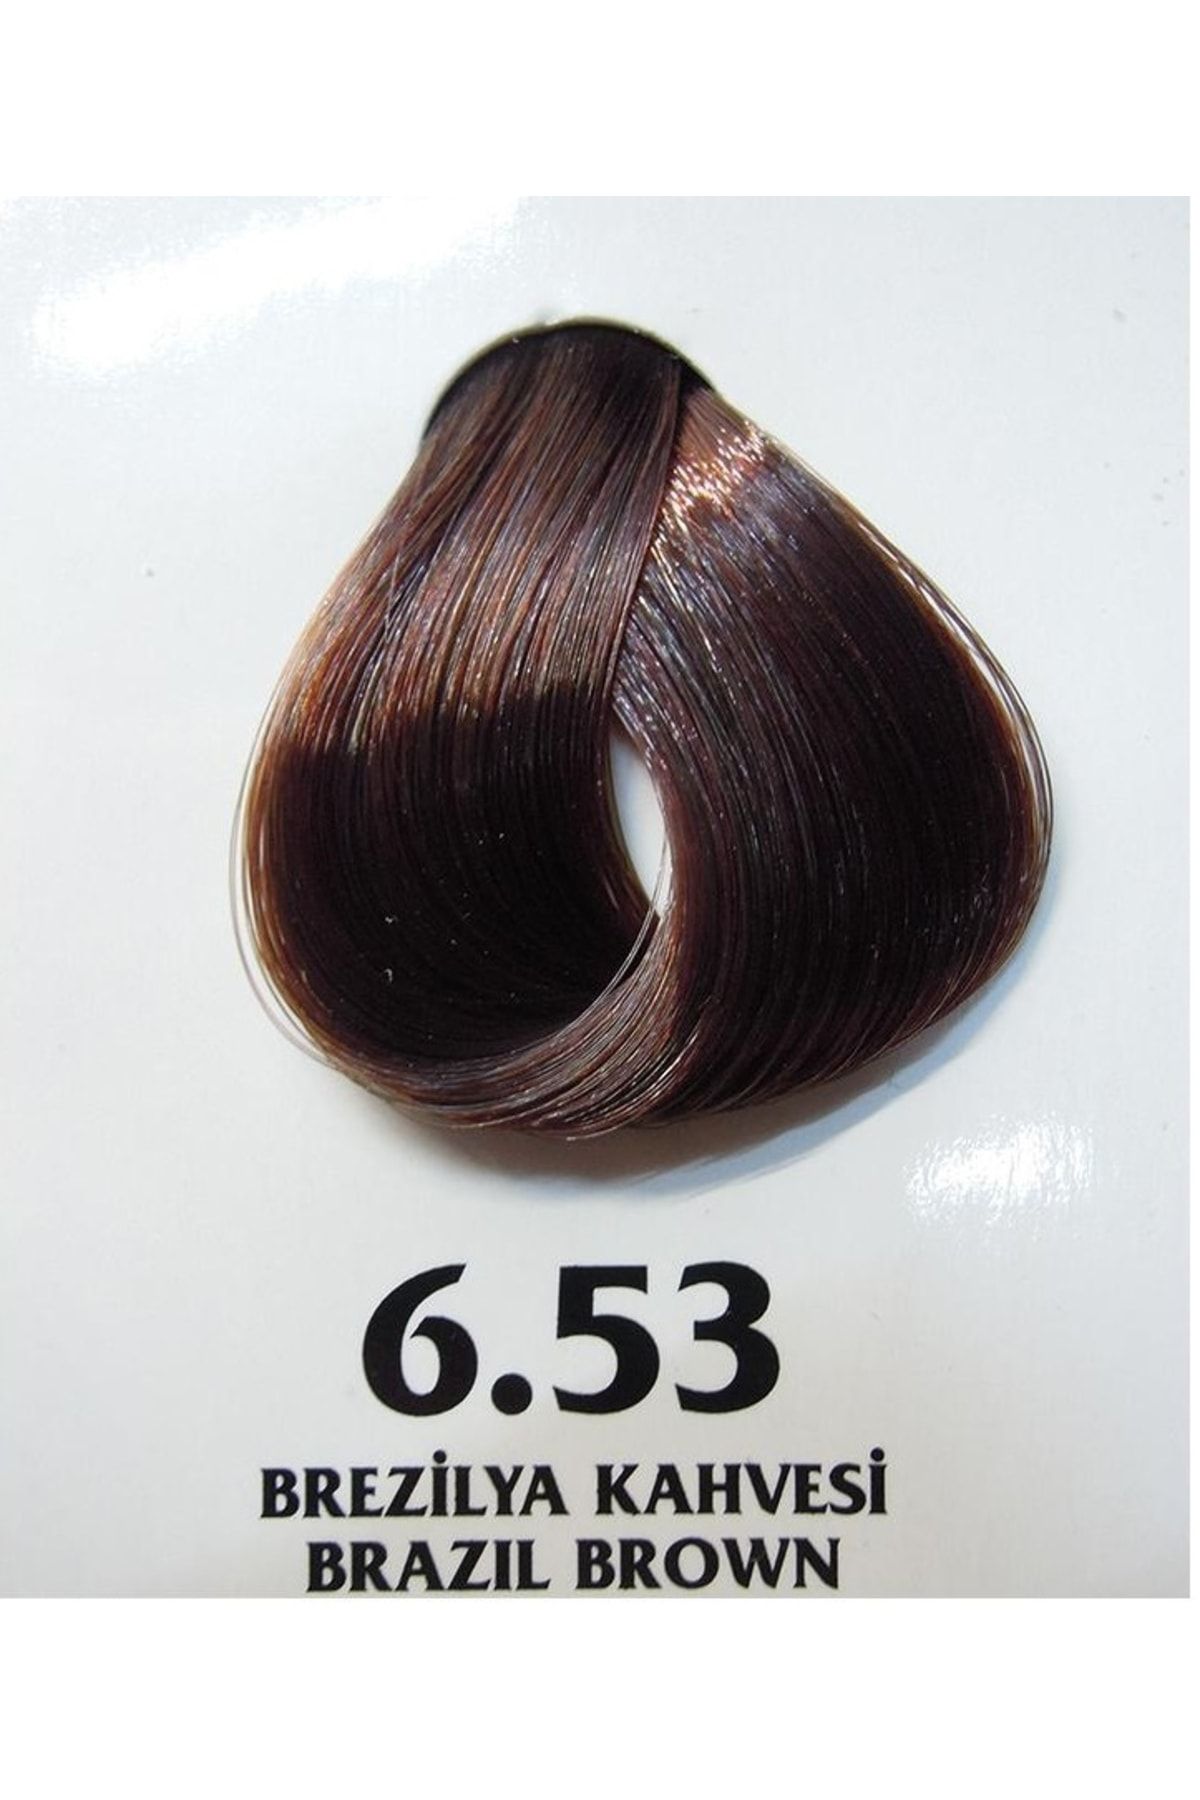 Clemency Farmavita Saç Boyası Brezilya Kahve 6.53 60gr.